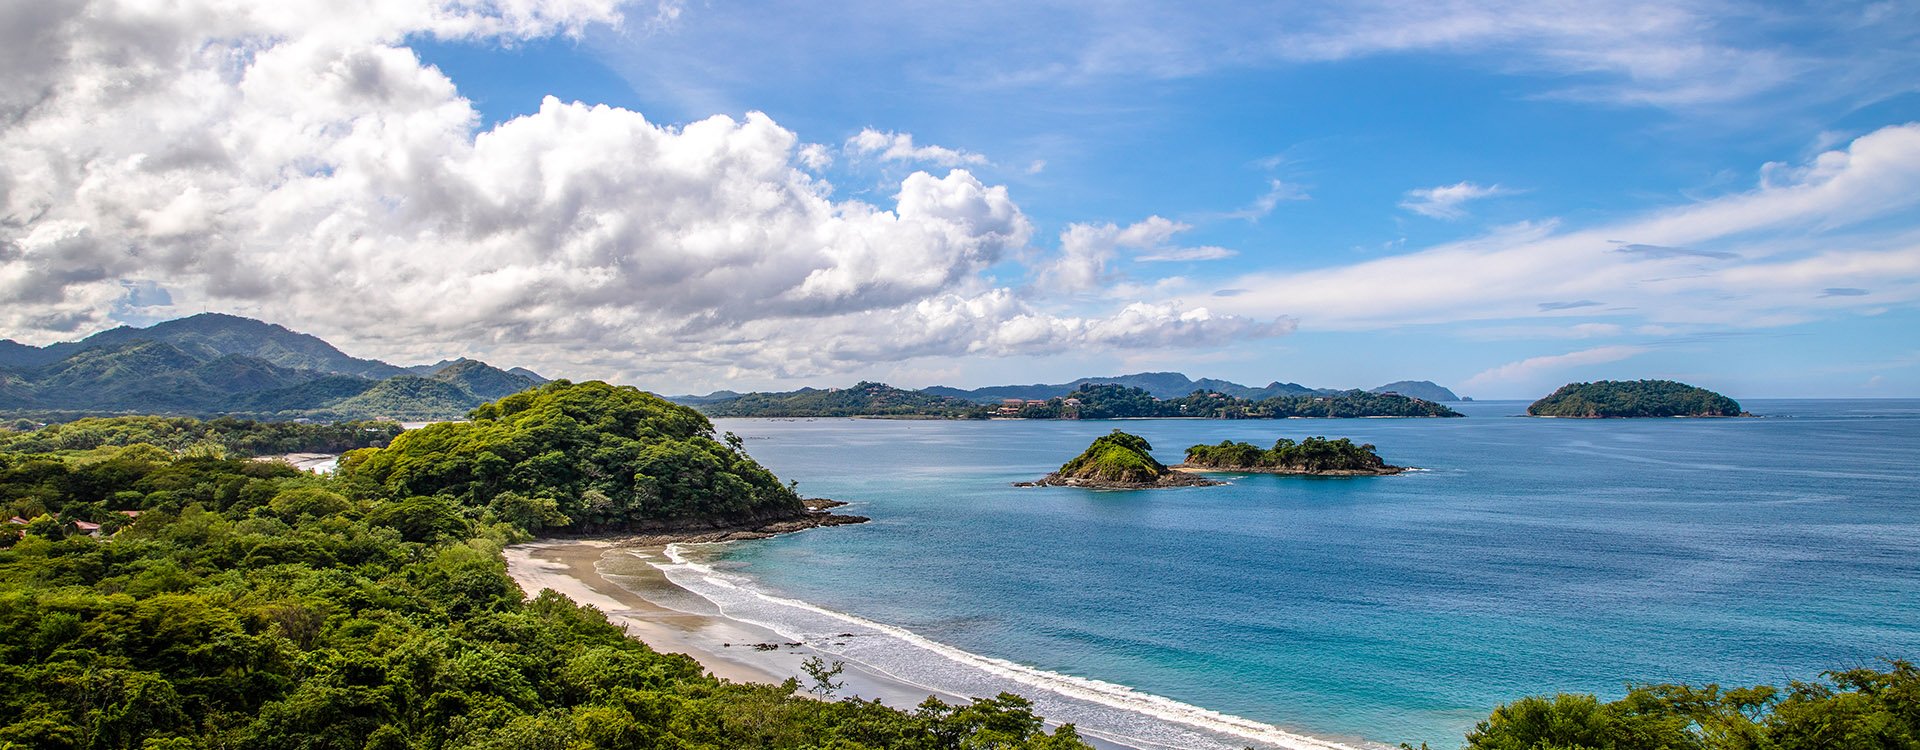 Beautiful Beach of Pacific on Nicoya Peninsula in Costa Rica